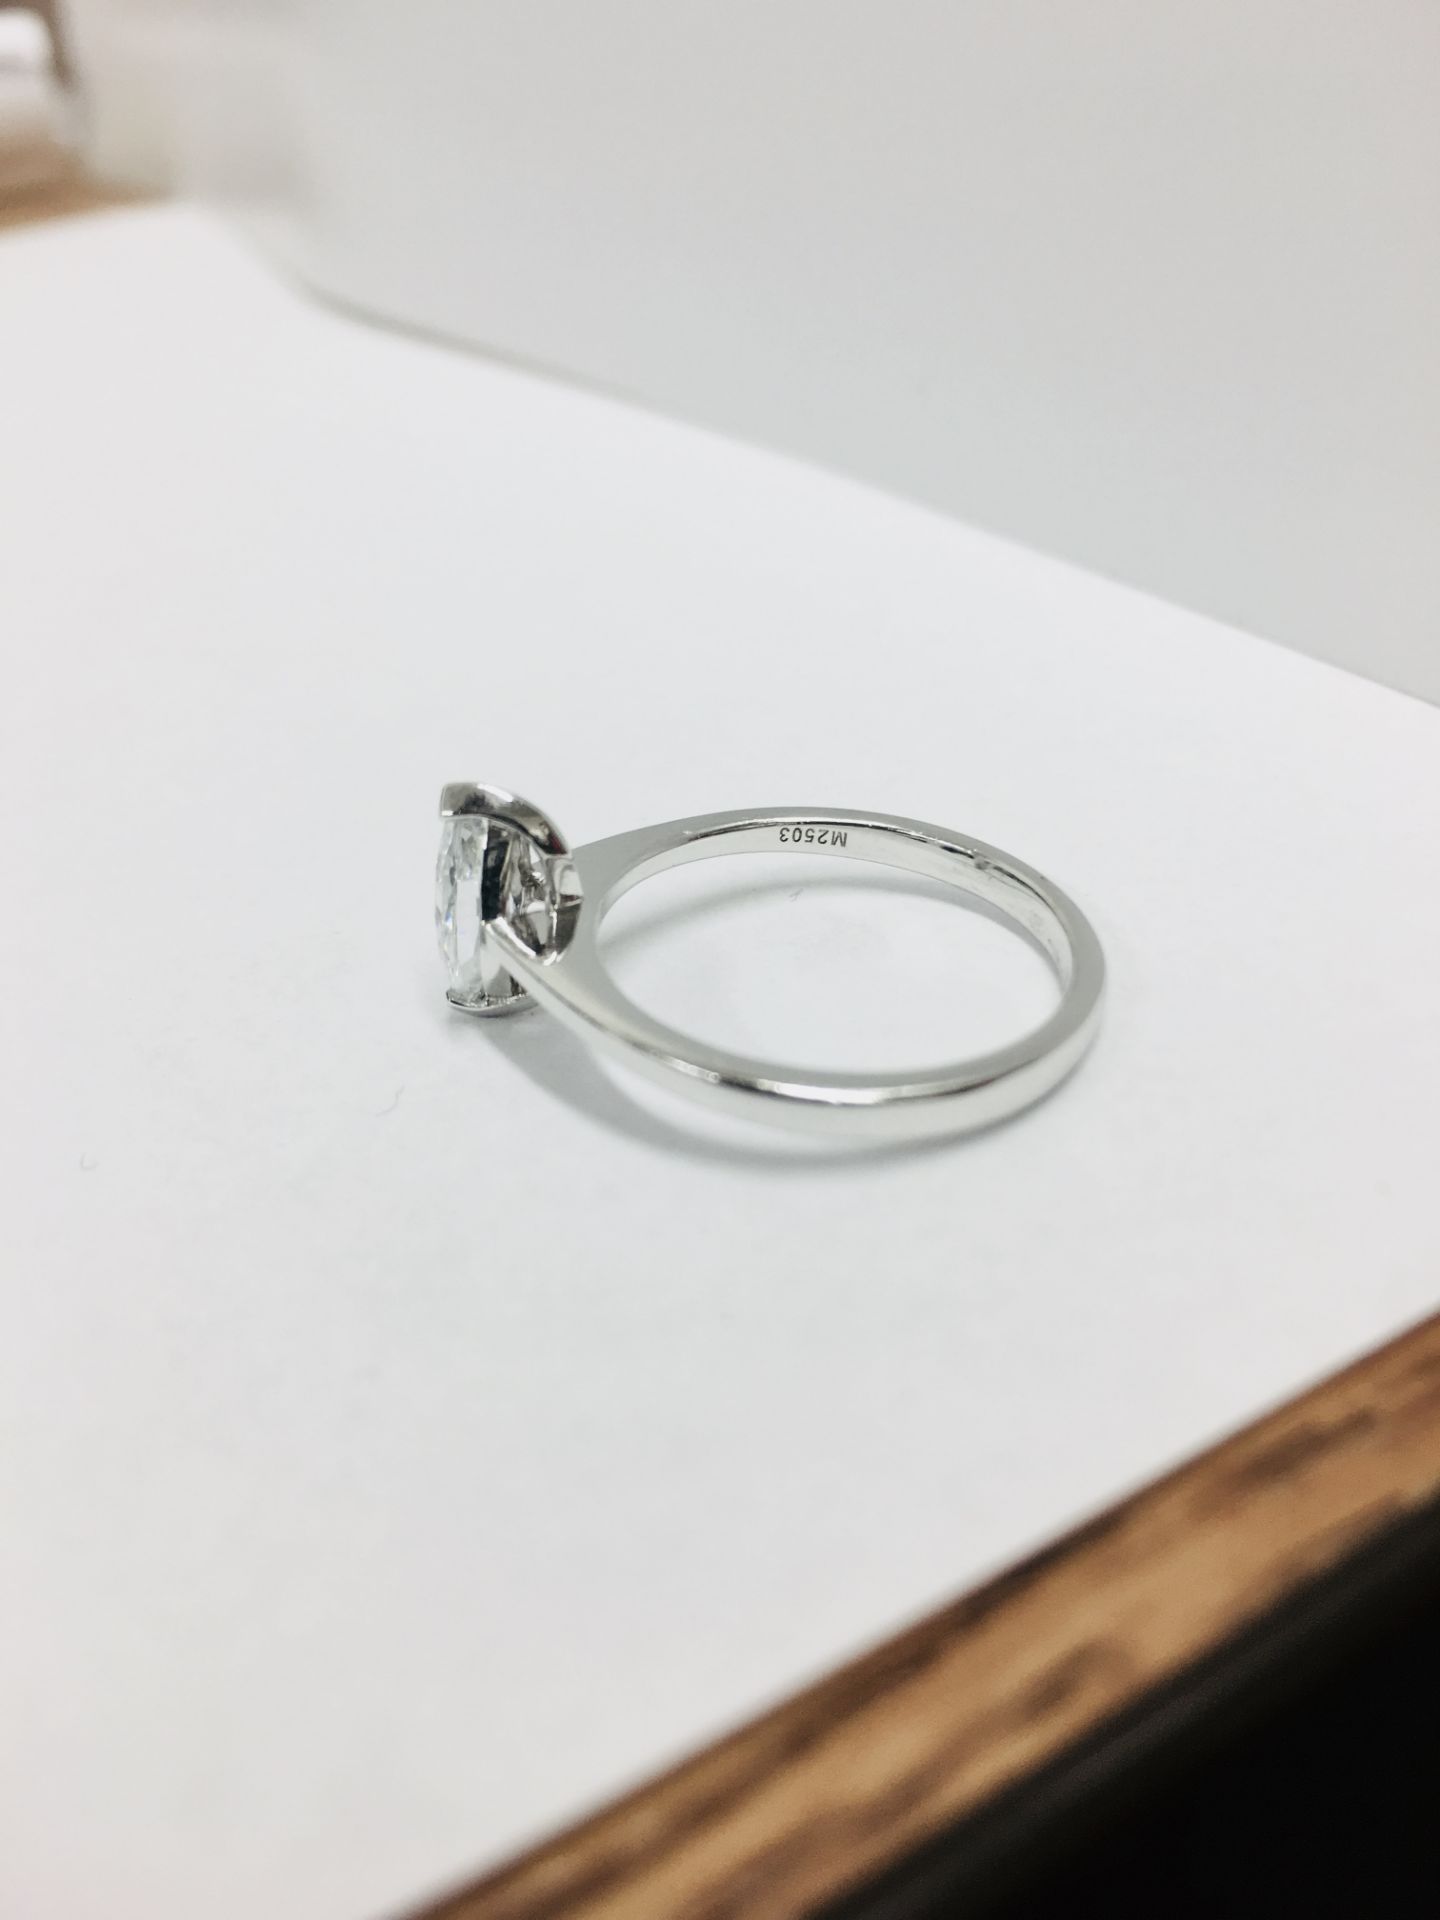 Platinum Marquis diamond soliaire ring,0.35ct marquis si clarity i colour,2.9gms platinum mount - Image 4 of 5